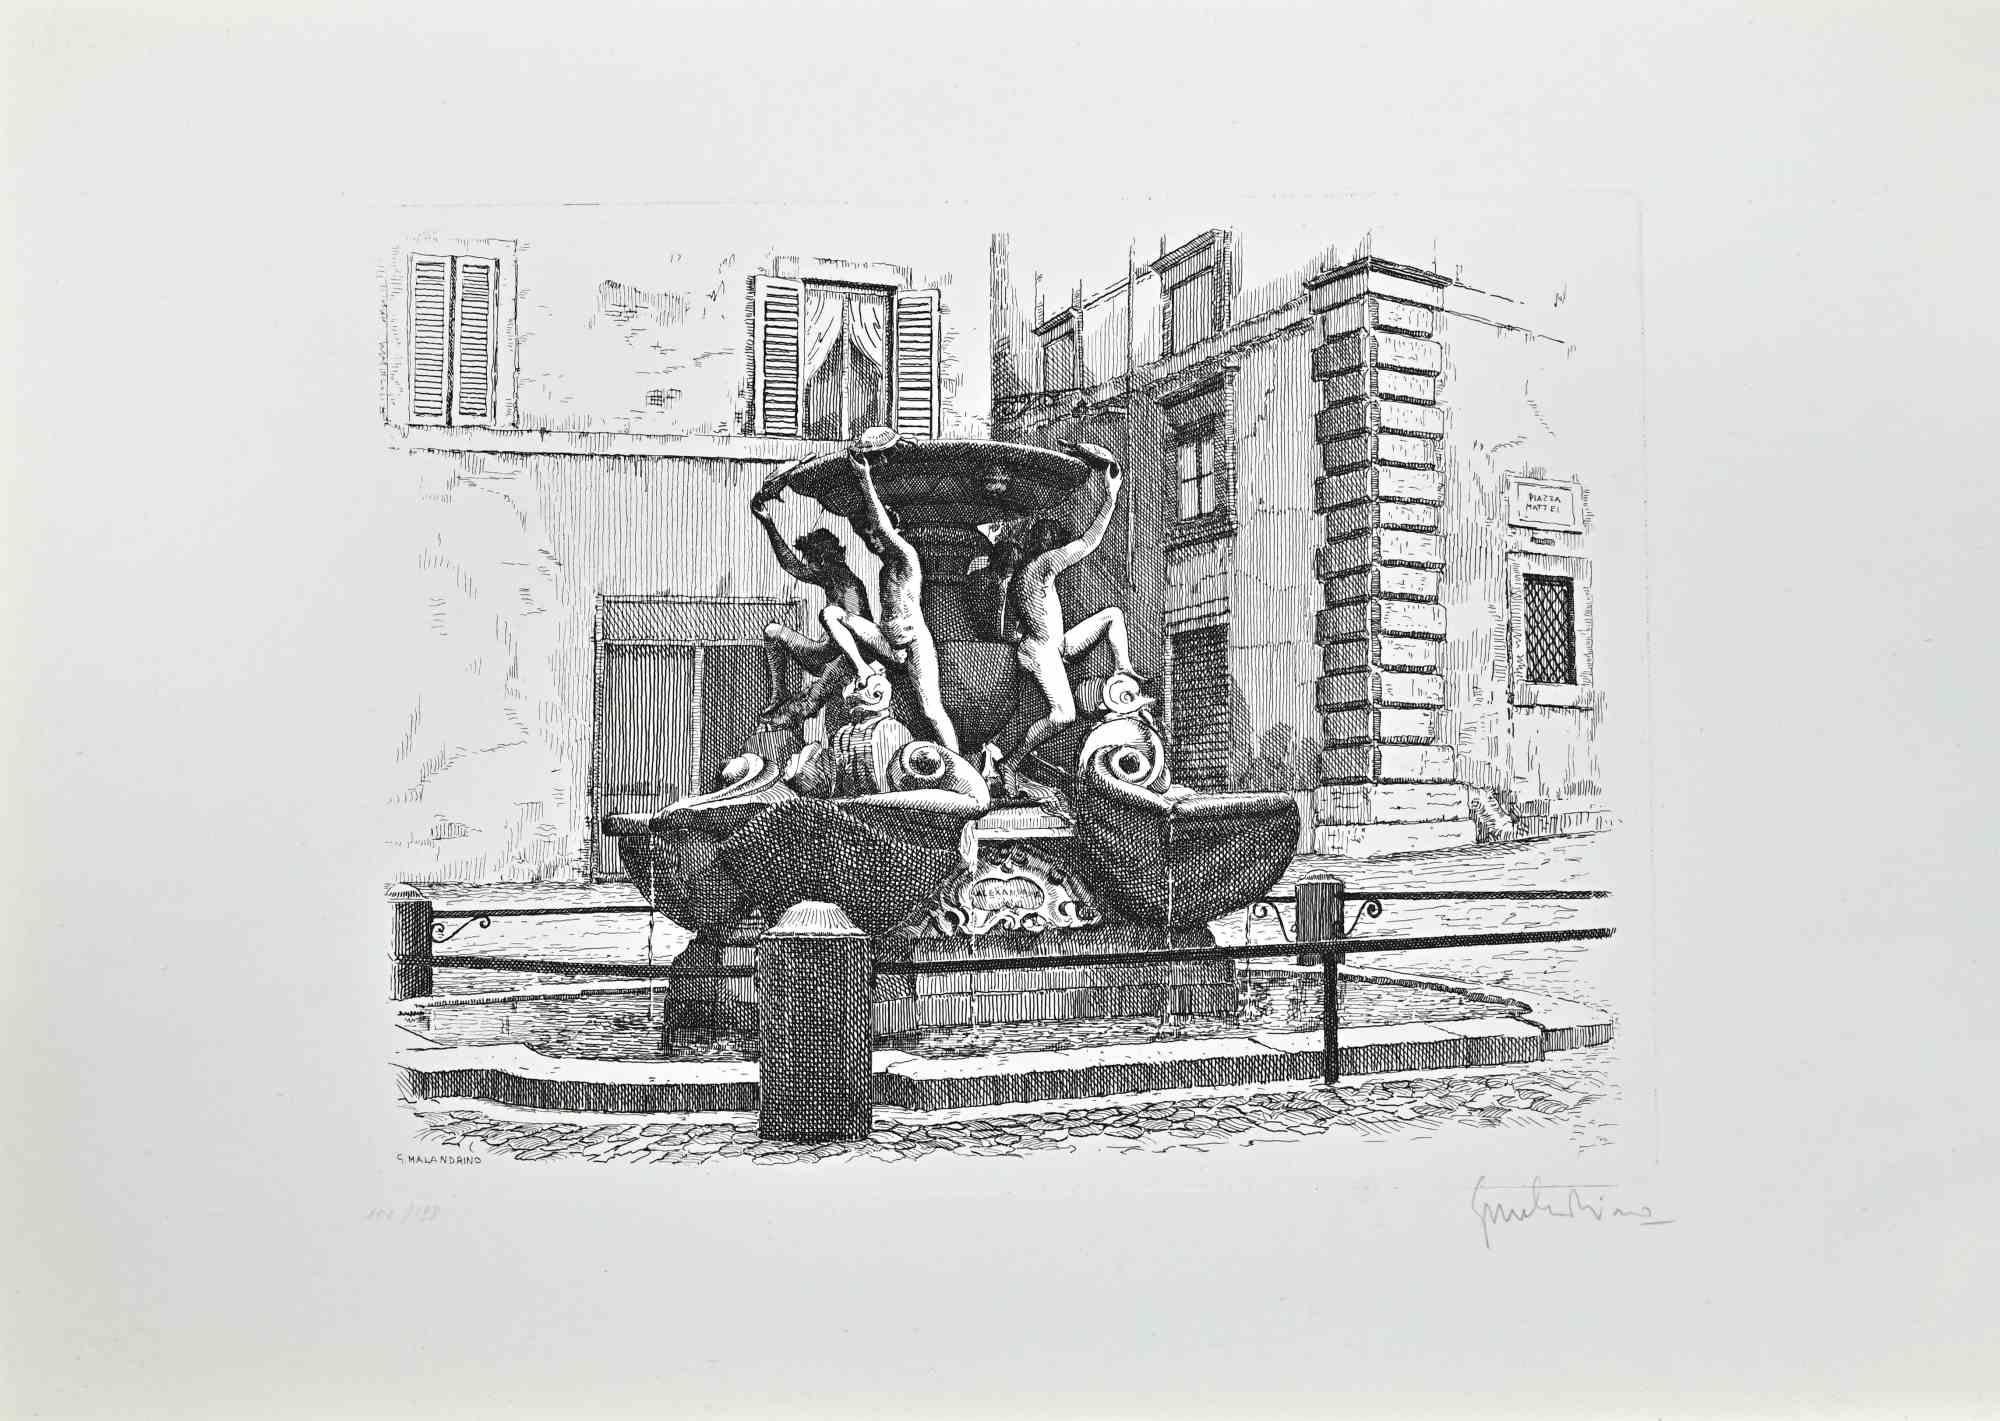 Turtle Fountain - Rom ist ein Kunstwerk von Giuseppe Malandrino.

Originaldruck in Ätztechnik.

Vom Künstler in der rechten unteren Ecke mit Bleistift handsigniert.

Nummerierte Ausgabe Nr. 102/199 in der unteren linken Ecke.

Gute Bedingungen.